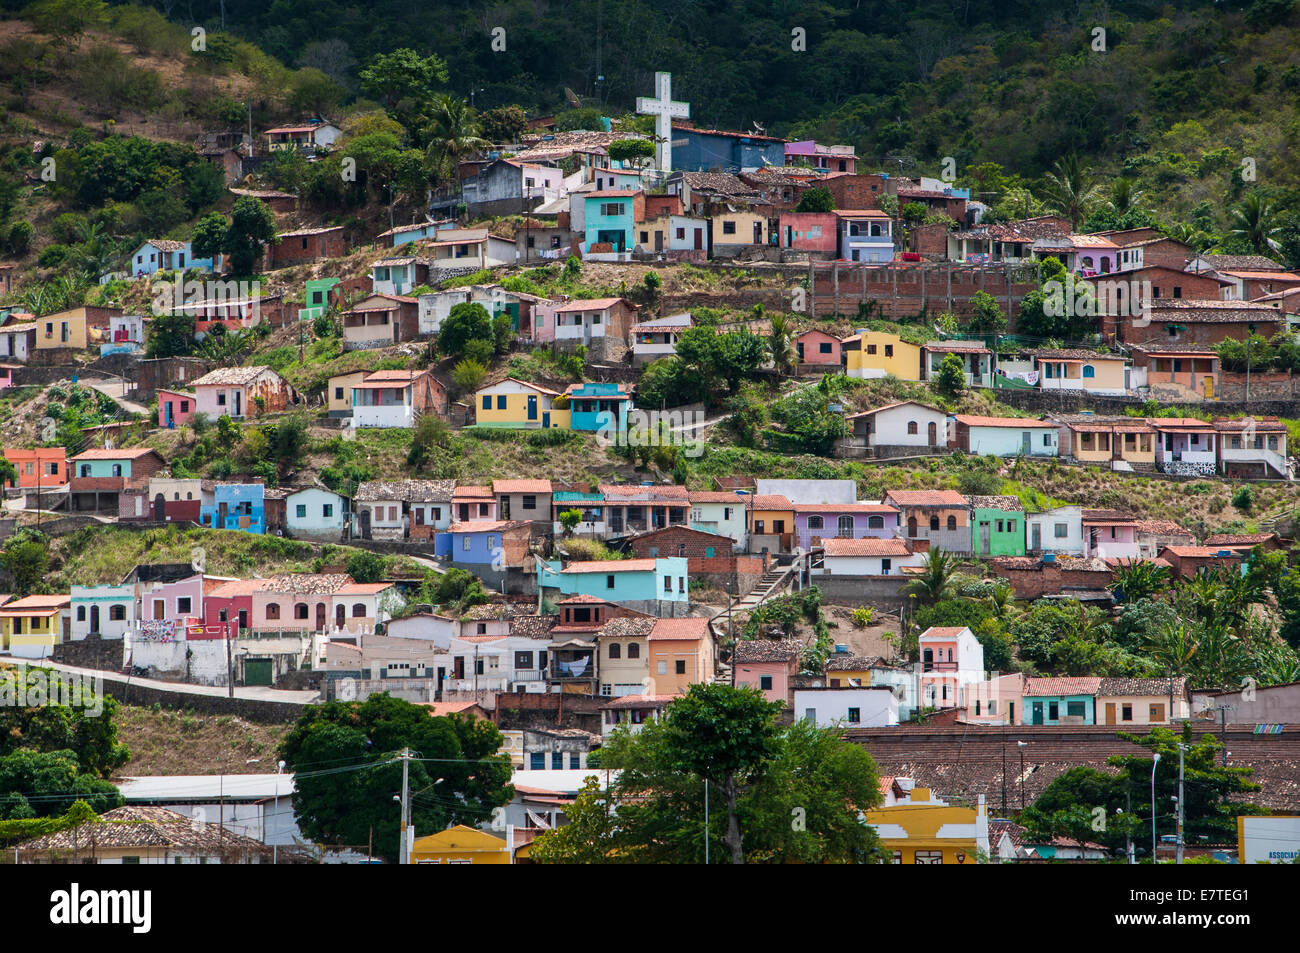 Paysage aux maisons colorées, Cachoeira, Bahia, Brésil Banque D'Images